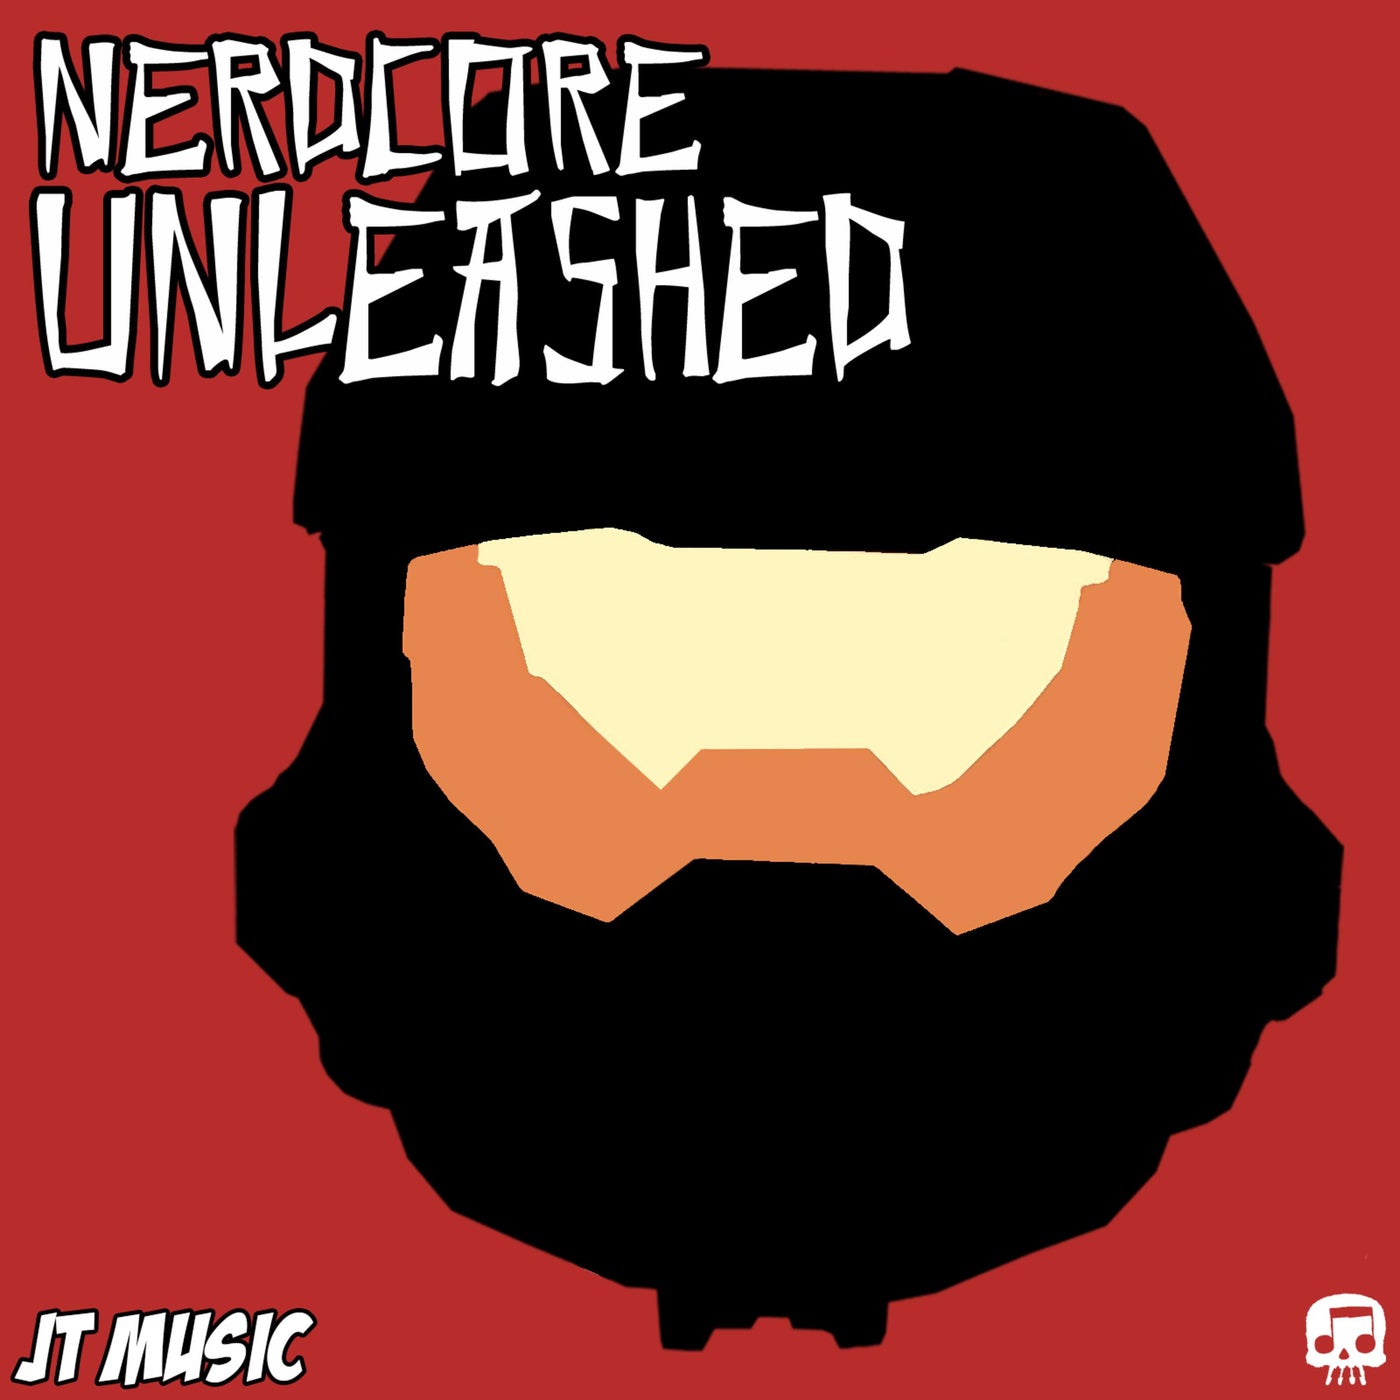 Nerdcore Unleashed by JT Music and Brysi on Beatsource